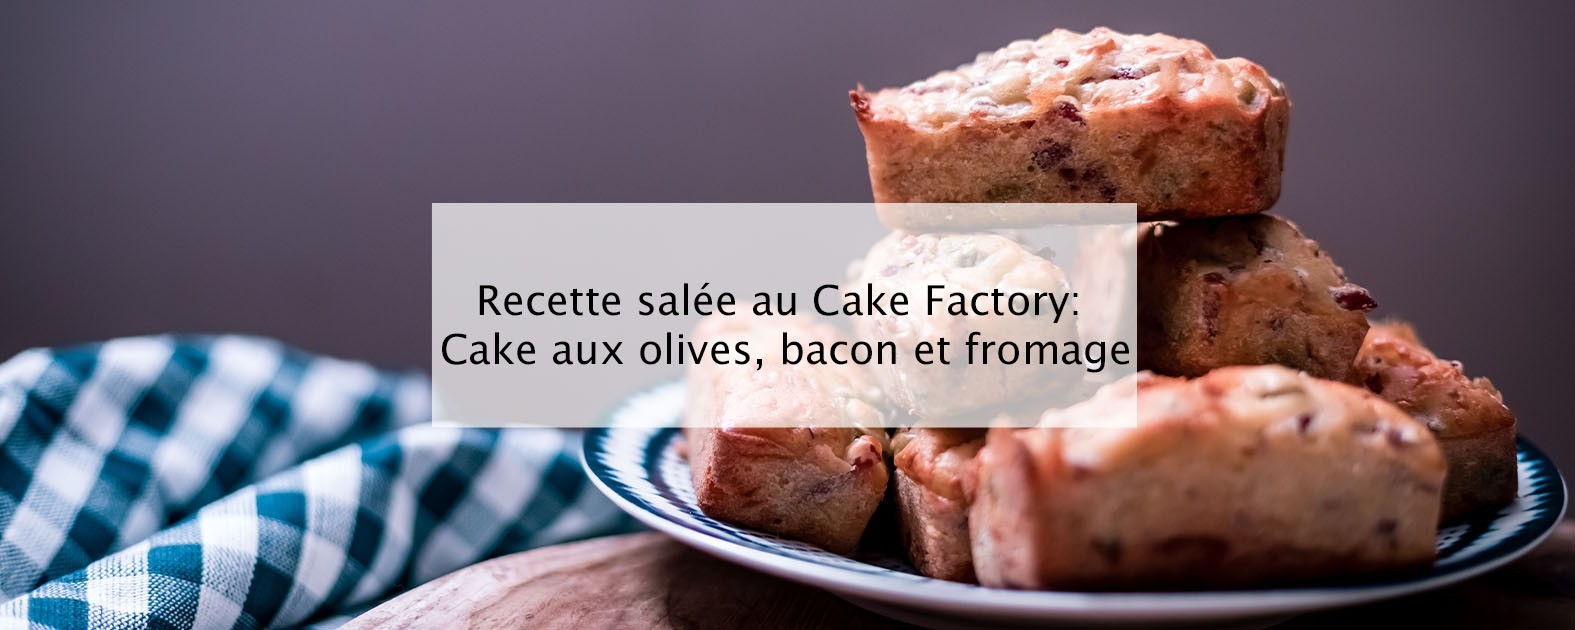 Minis cakes salés - Recette Cake Factory